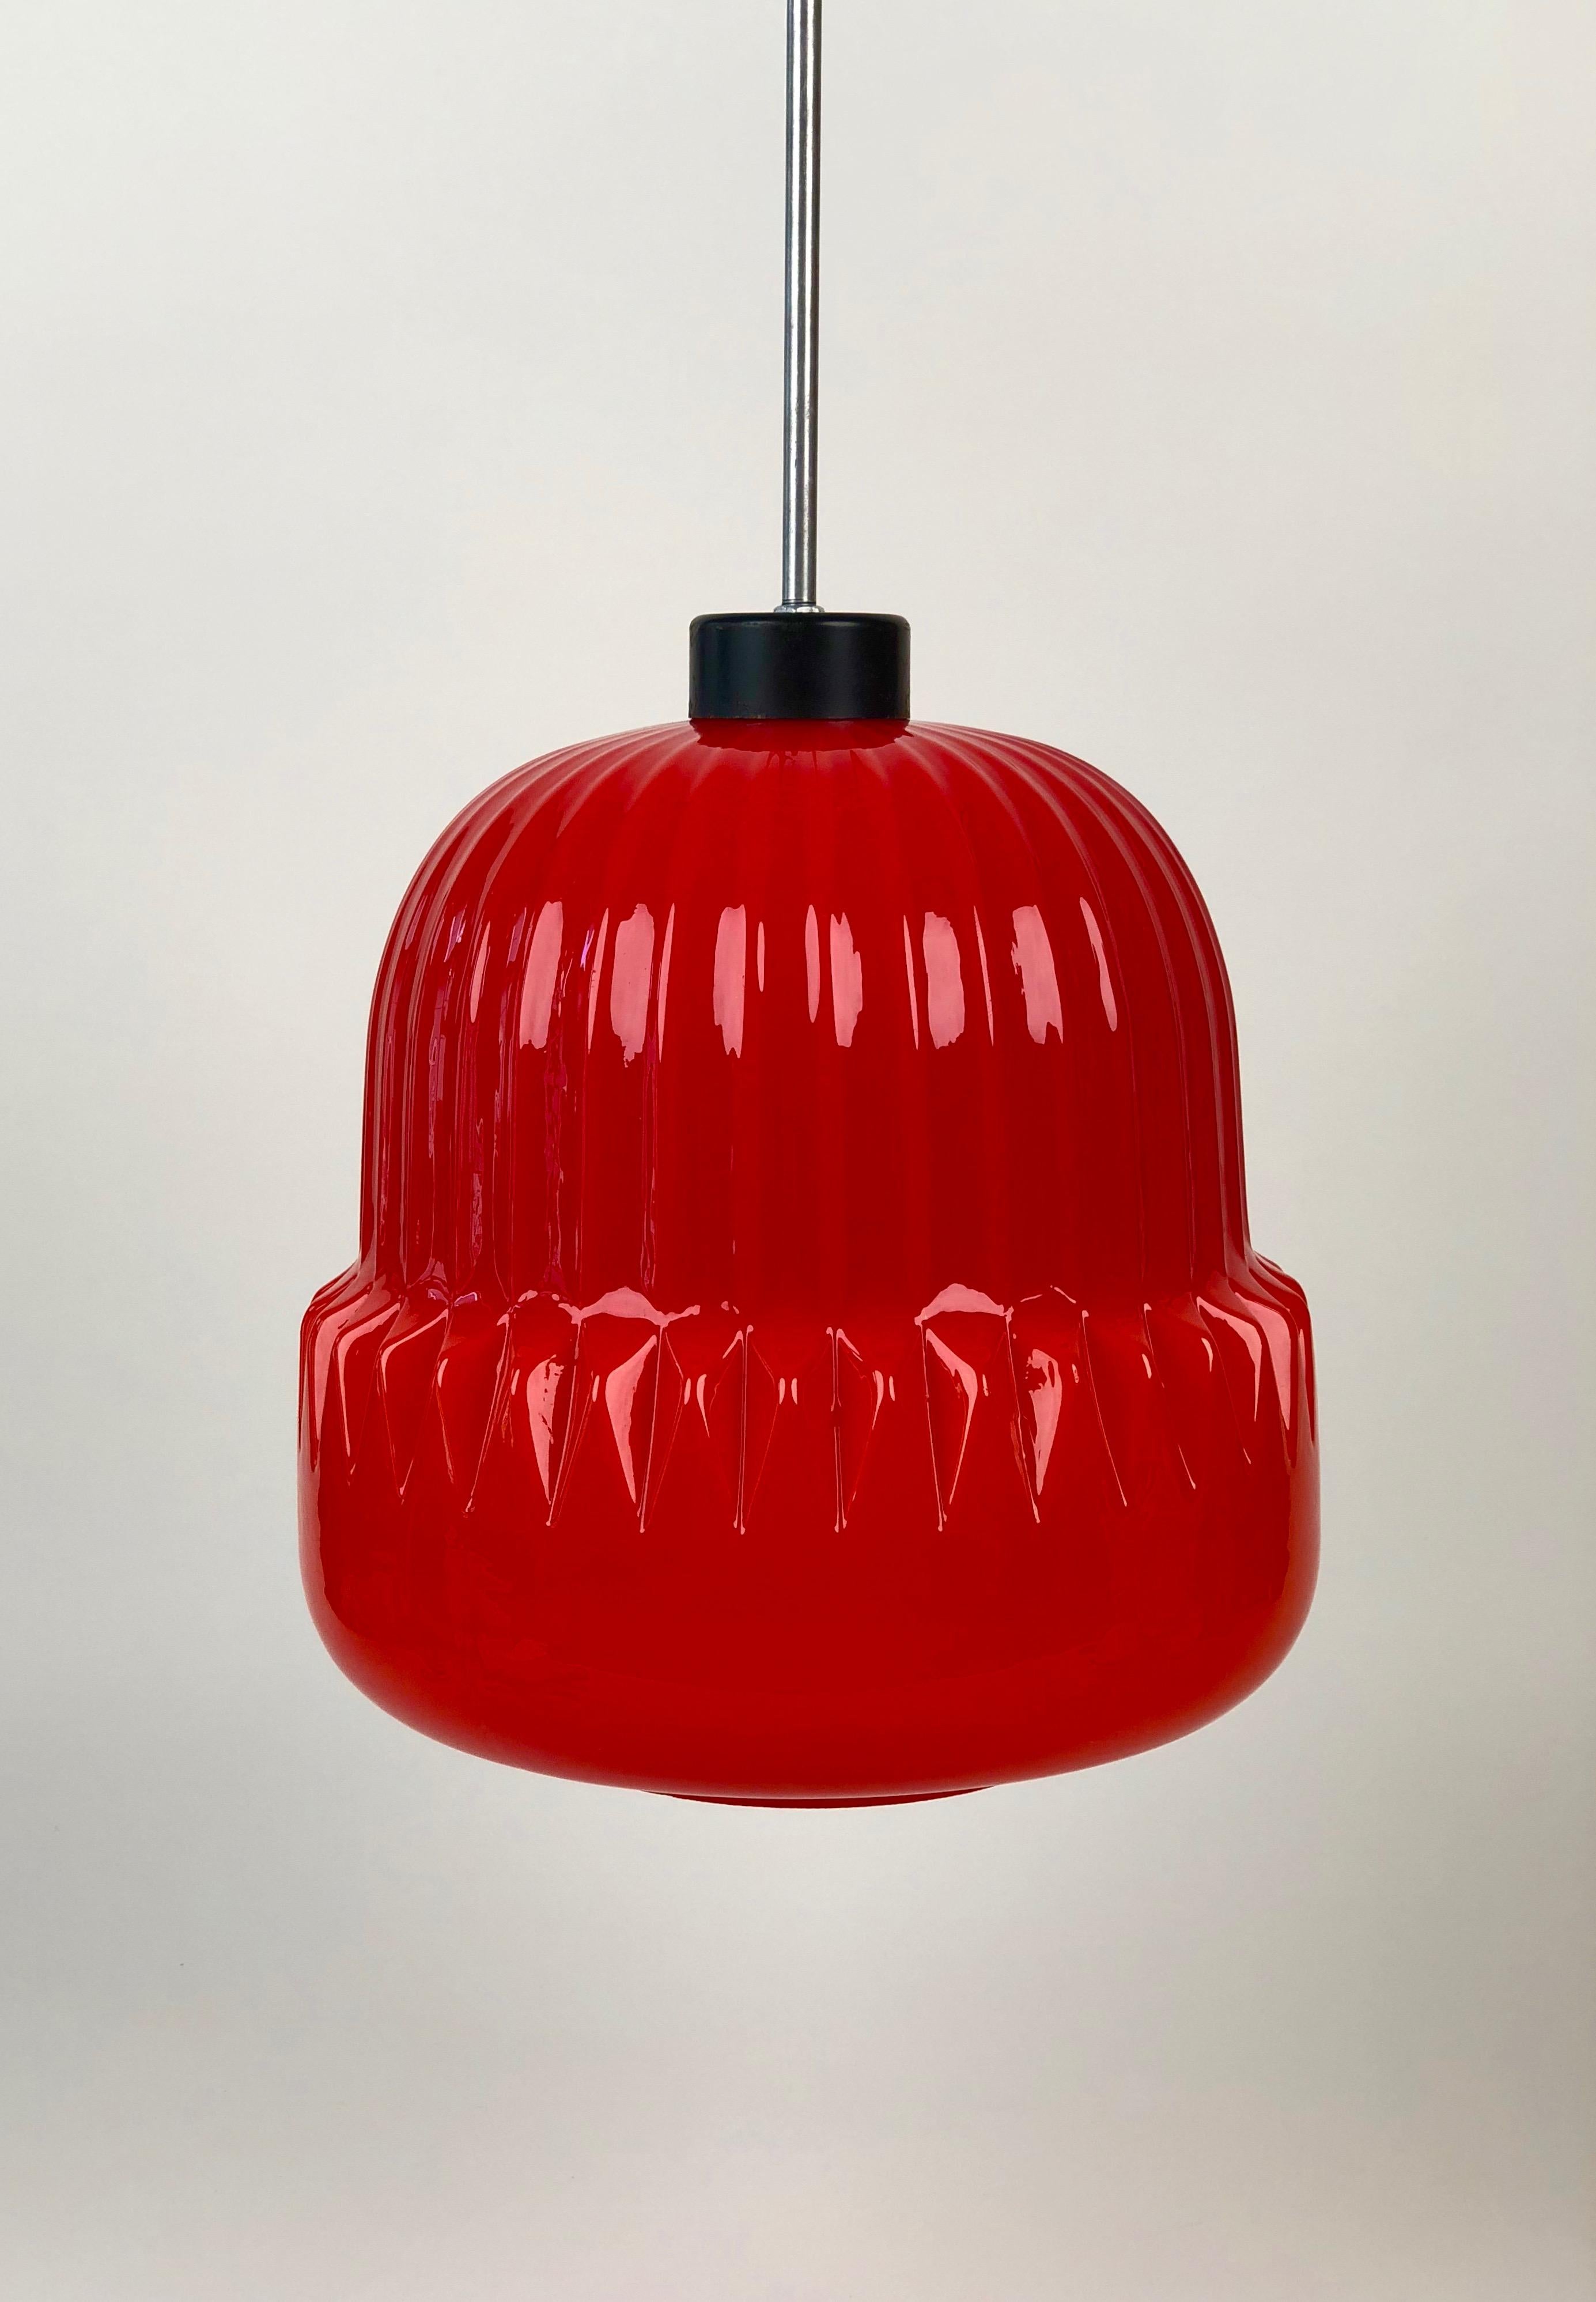 Une lampe suspendue très unique du début des années 1960, fabriquée en Tchécoslovaquie. L'abat-jour en verre rouge a un
motif cannelé moulé dans la forme du verre. La lumière émise est chaude et intense. Il brille. J'espère...
que j'ai obtenu une